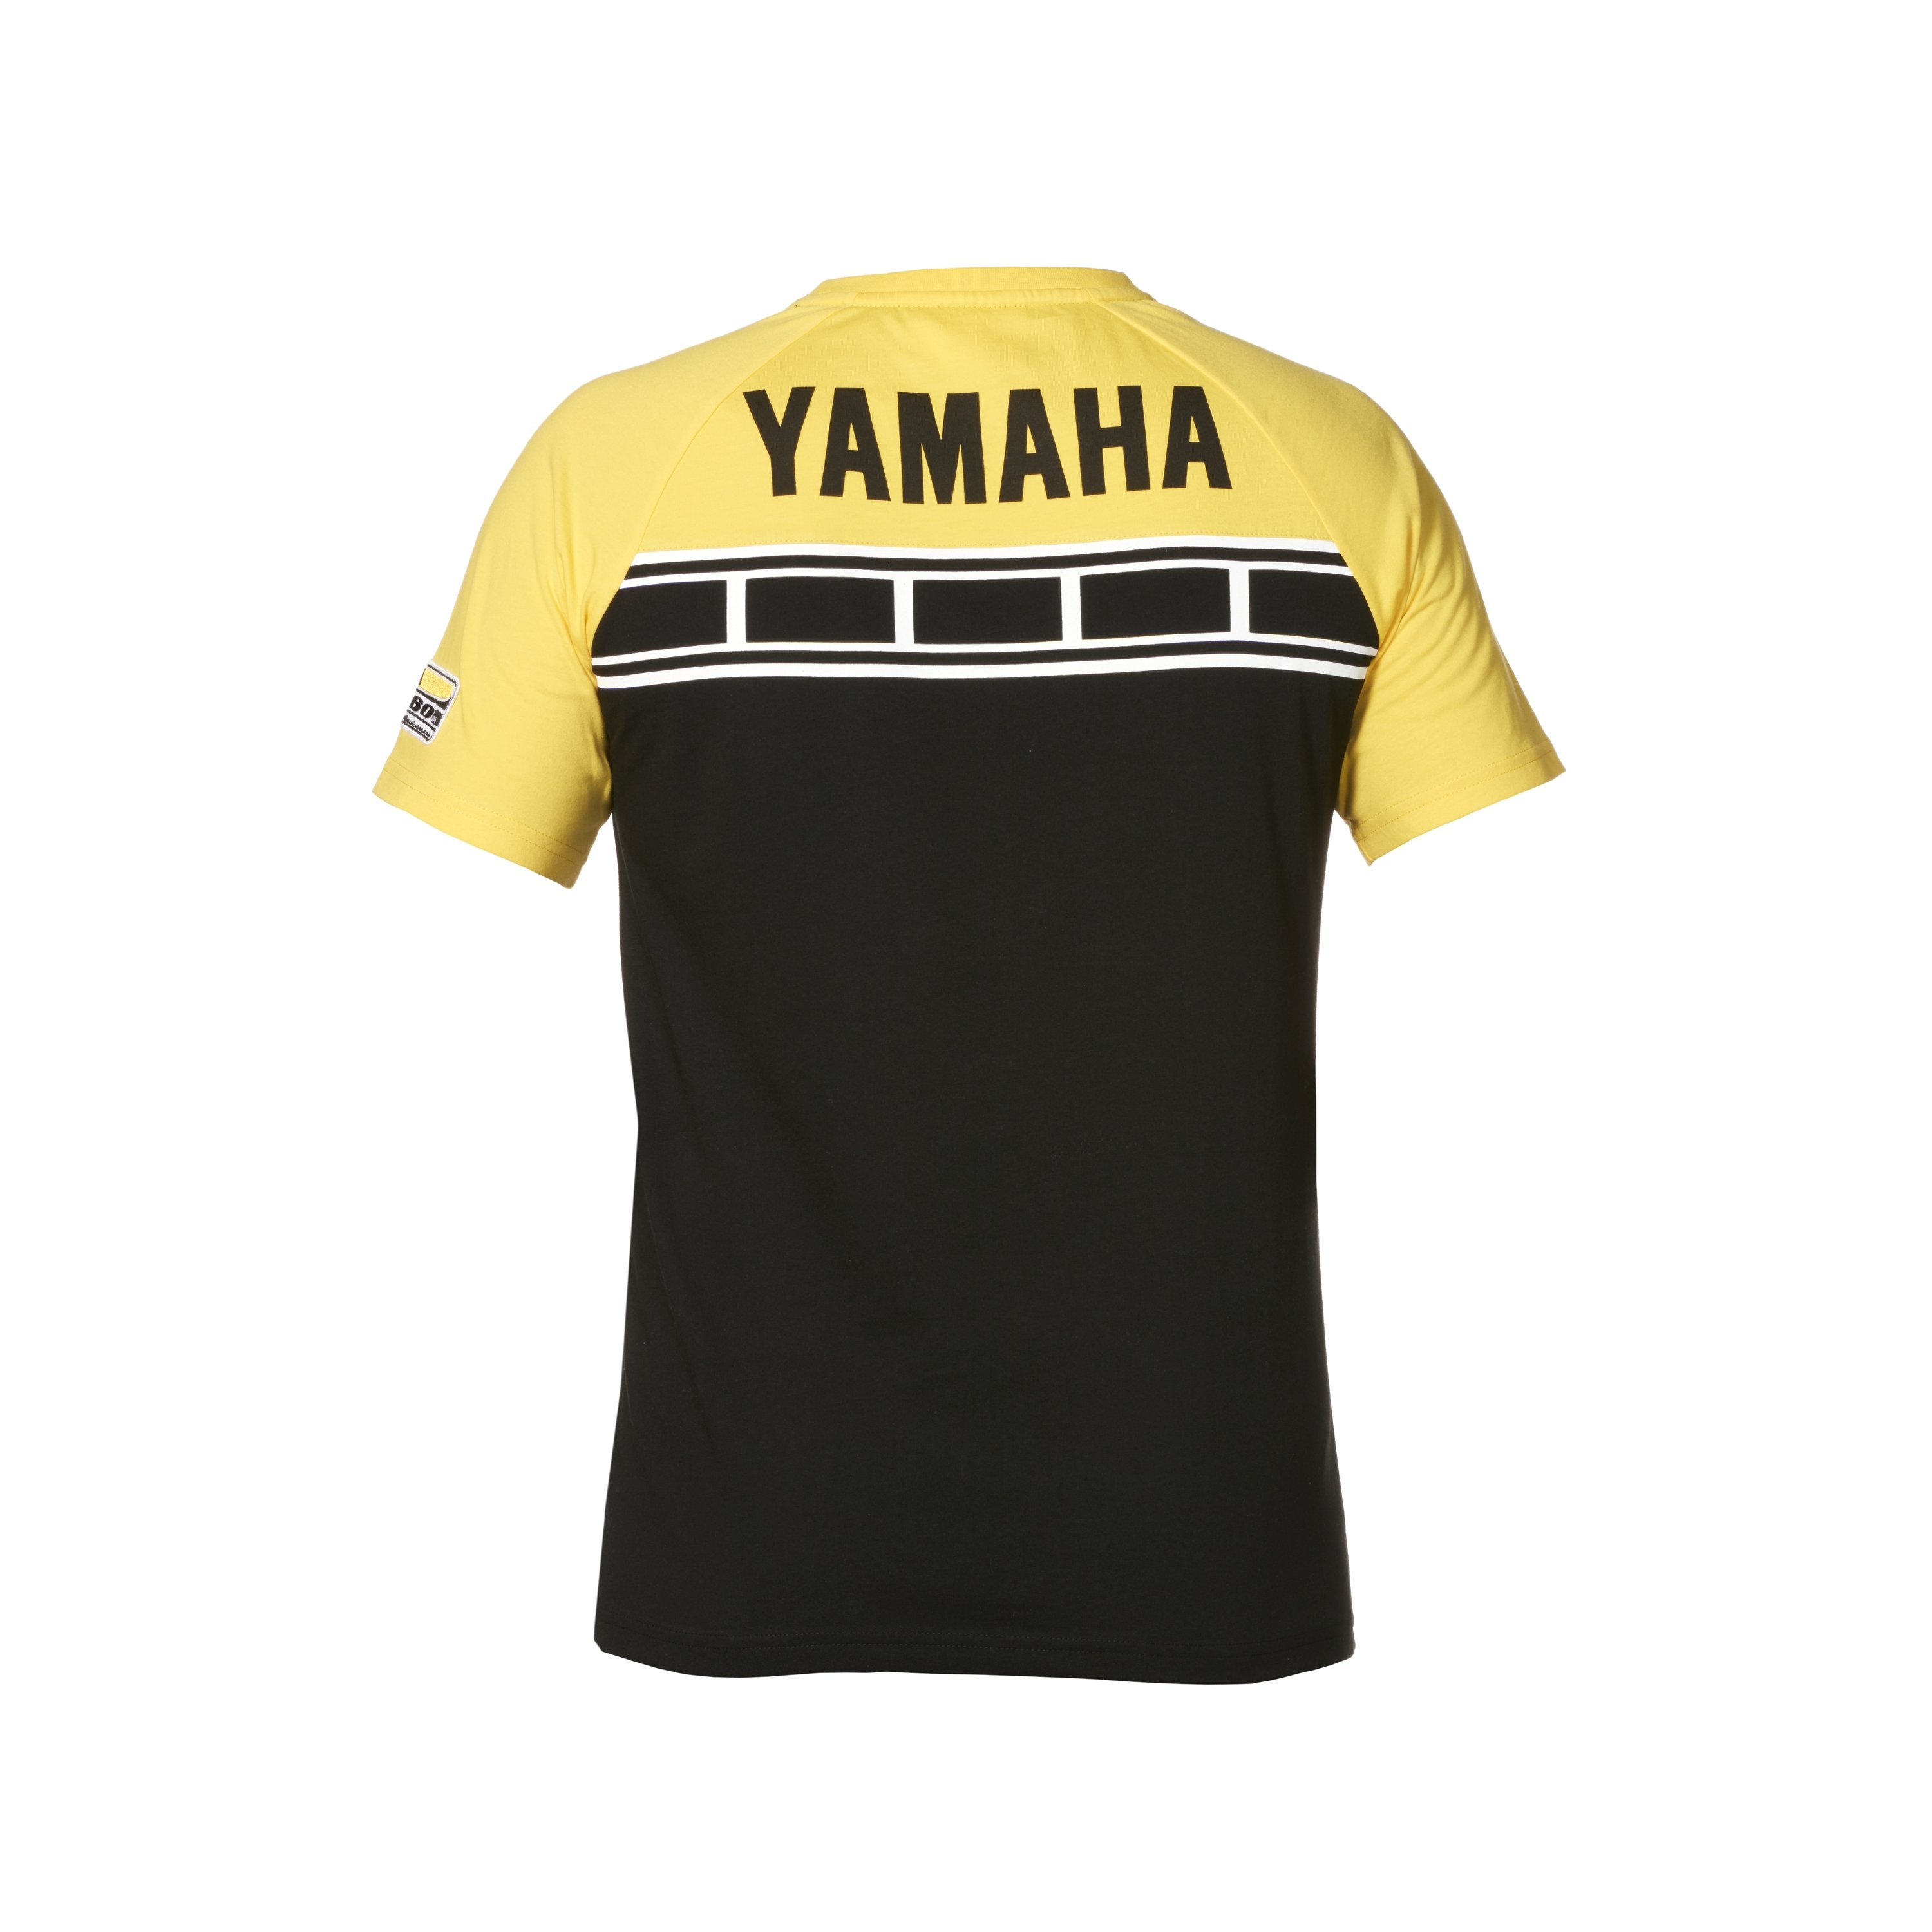 Yamaha celebra il suo 60° Anniversario con una linea di